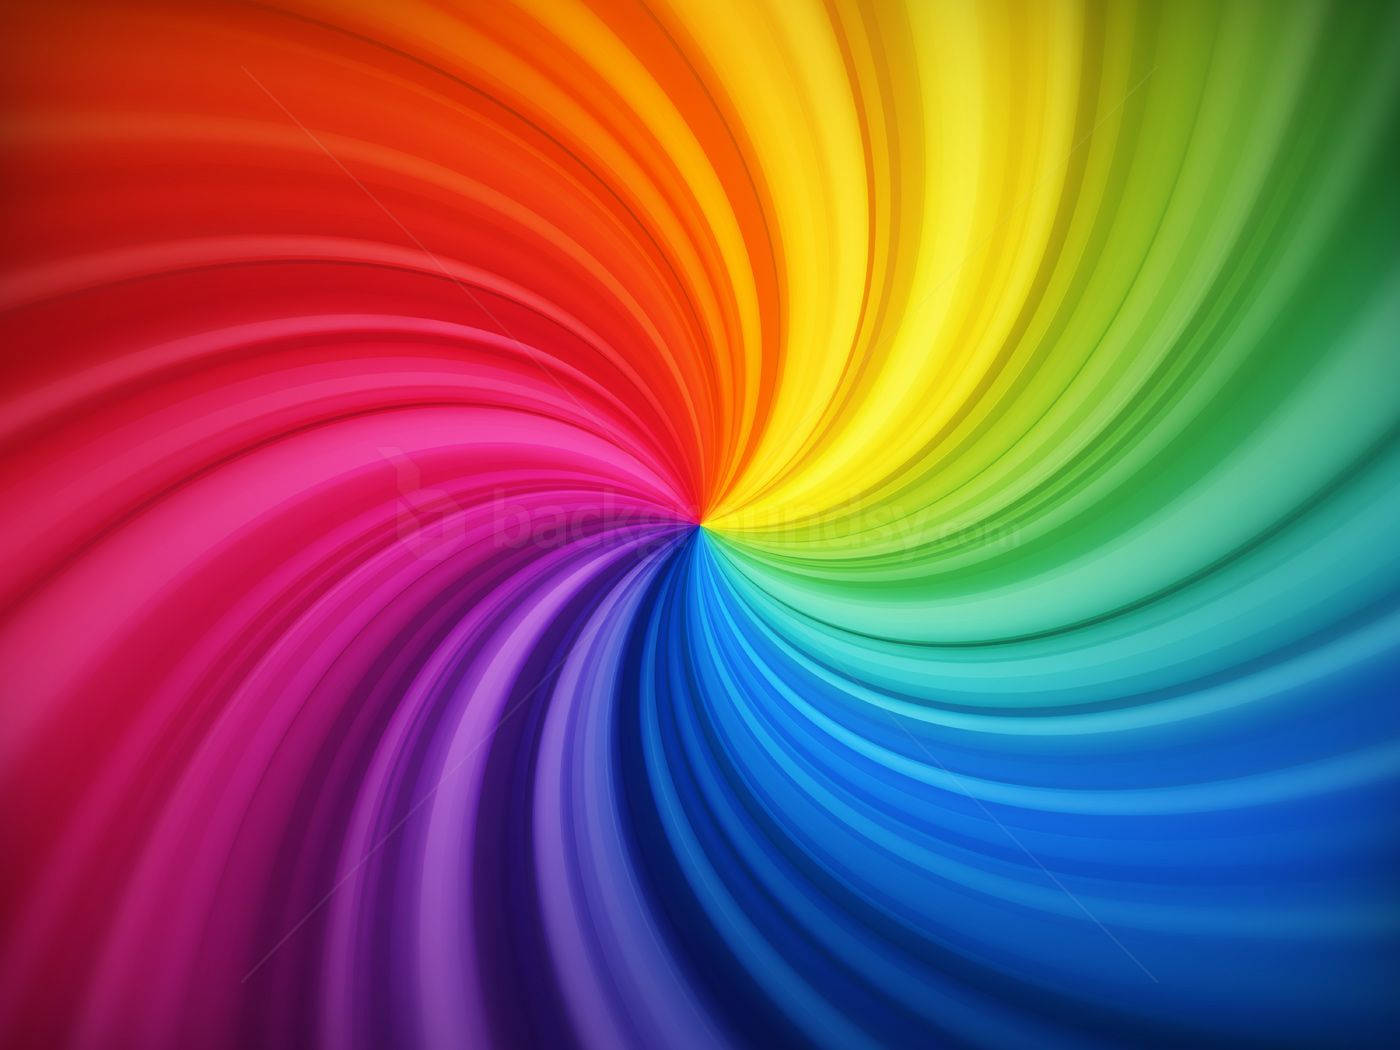 Hd Spiral Rainbow Background Wallpaper